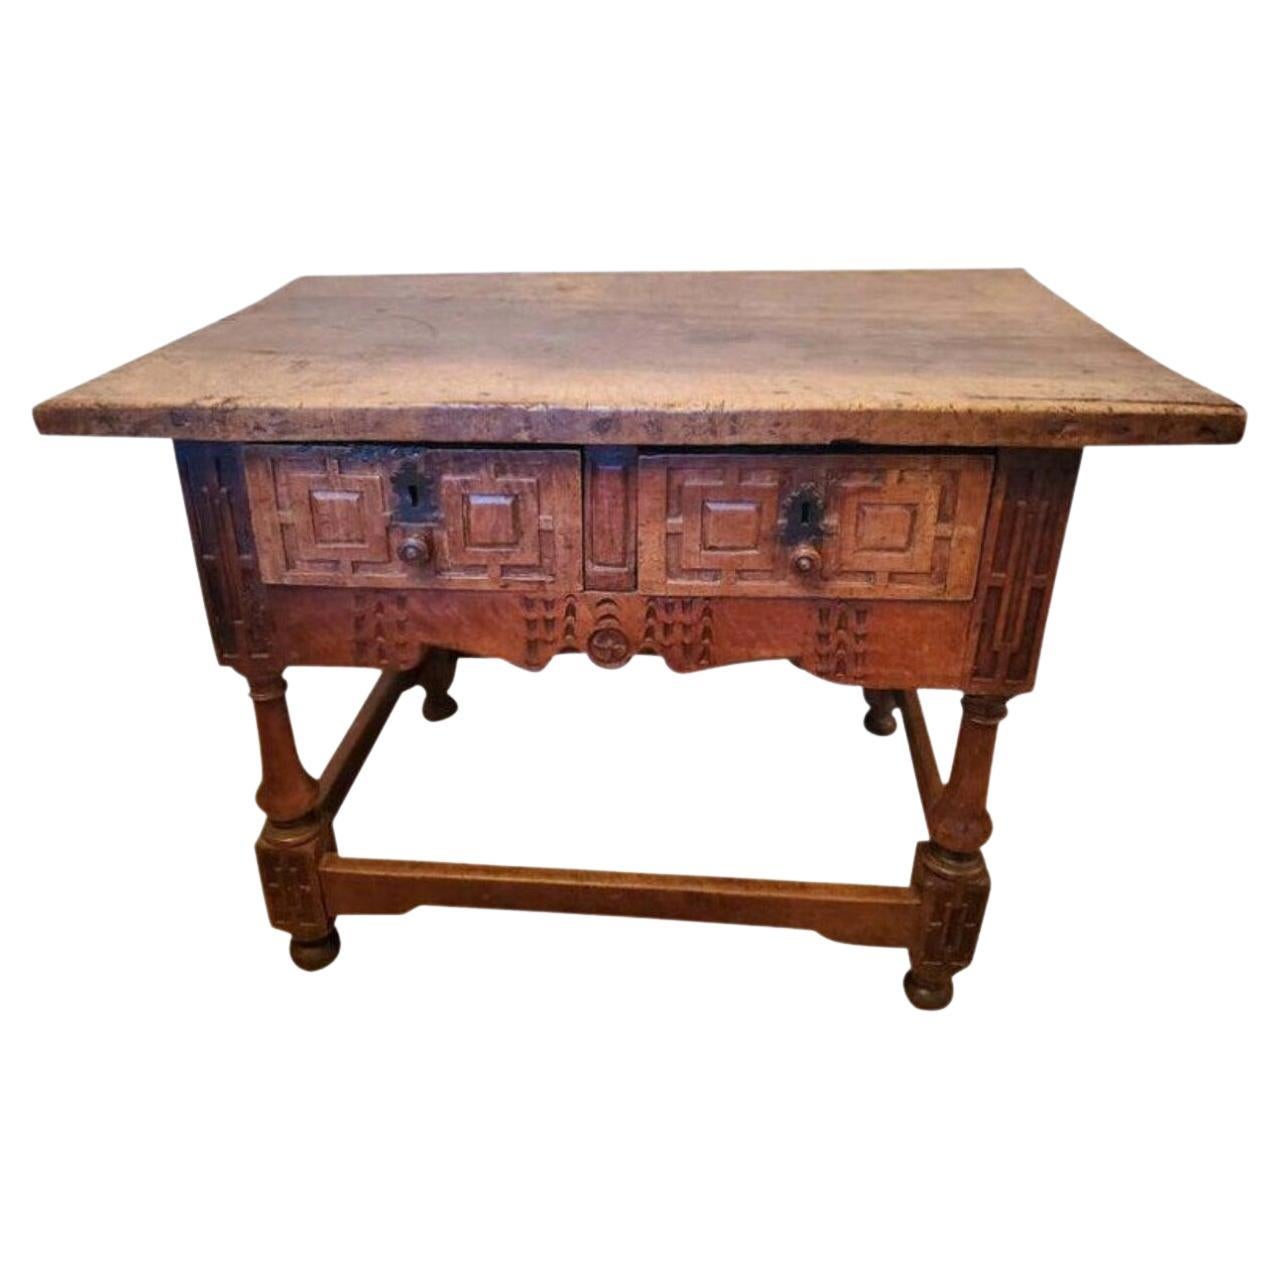 Iberischer rustikaler Tisch aus dem 17. Jahrhundert